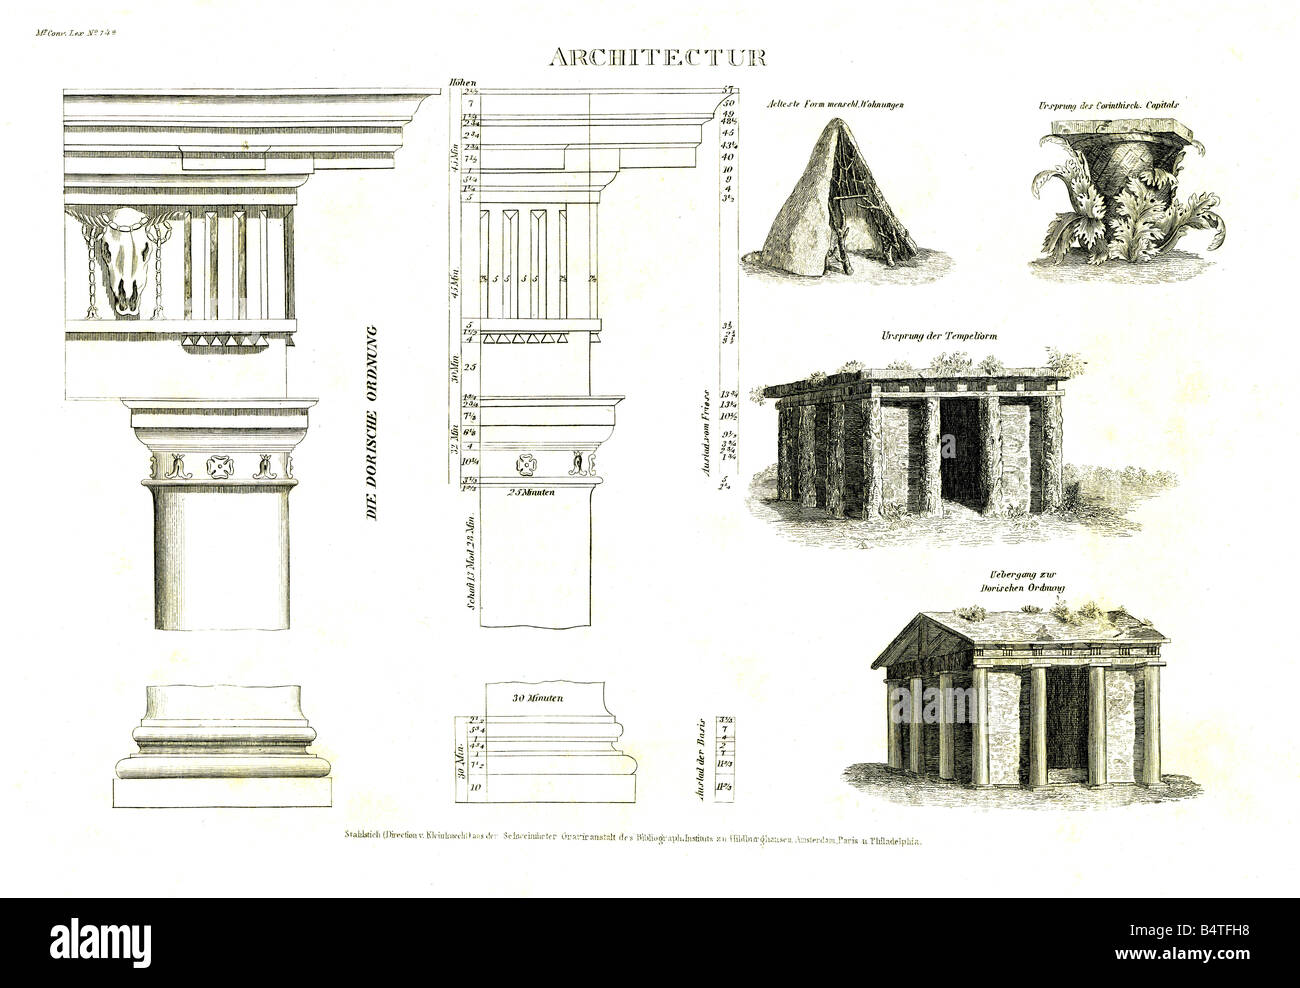 Architettura, templi, mondo antico, ordine dorico, incisione in acciaio, Meyers Convertionsexikon, Lipsia, 1895, Foto Stock